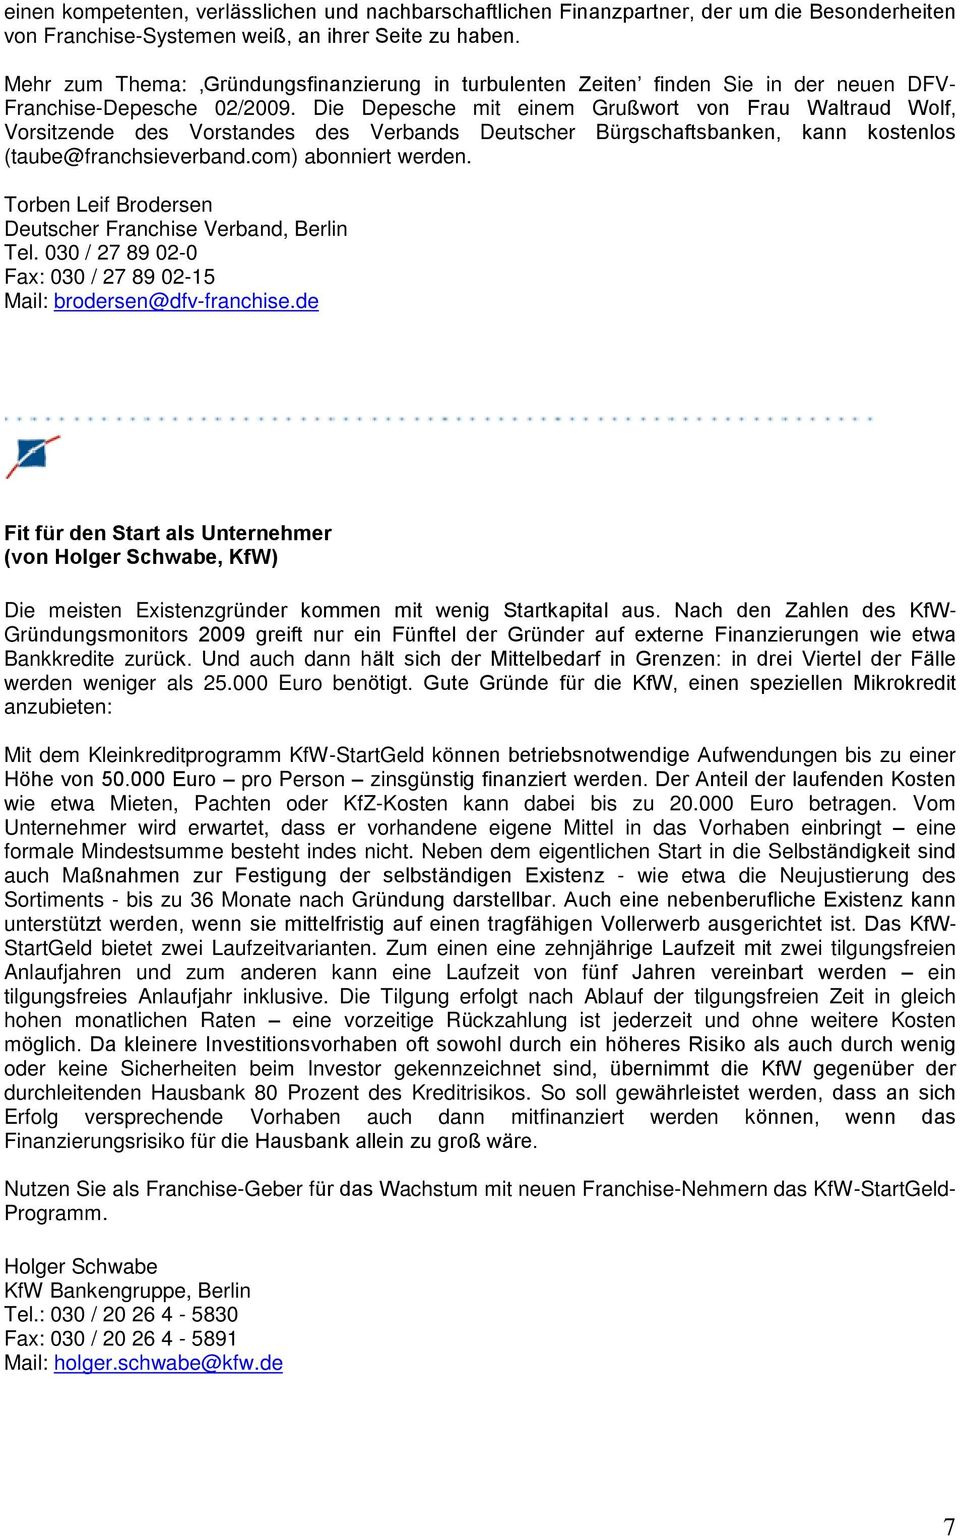 Die Depesche mit einem Grußwort von Frau Waltraud Wolf, Vorsitzende des Vorstandes des Verbands Deutscher Bürgschaftsbanken, kann kostenlos (taube@franchsieverband.com) abonniert werden.